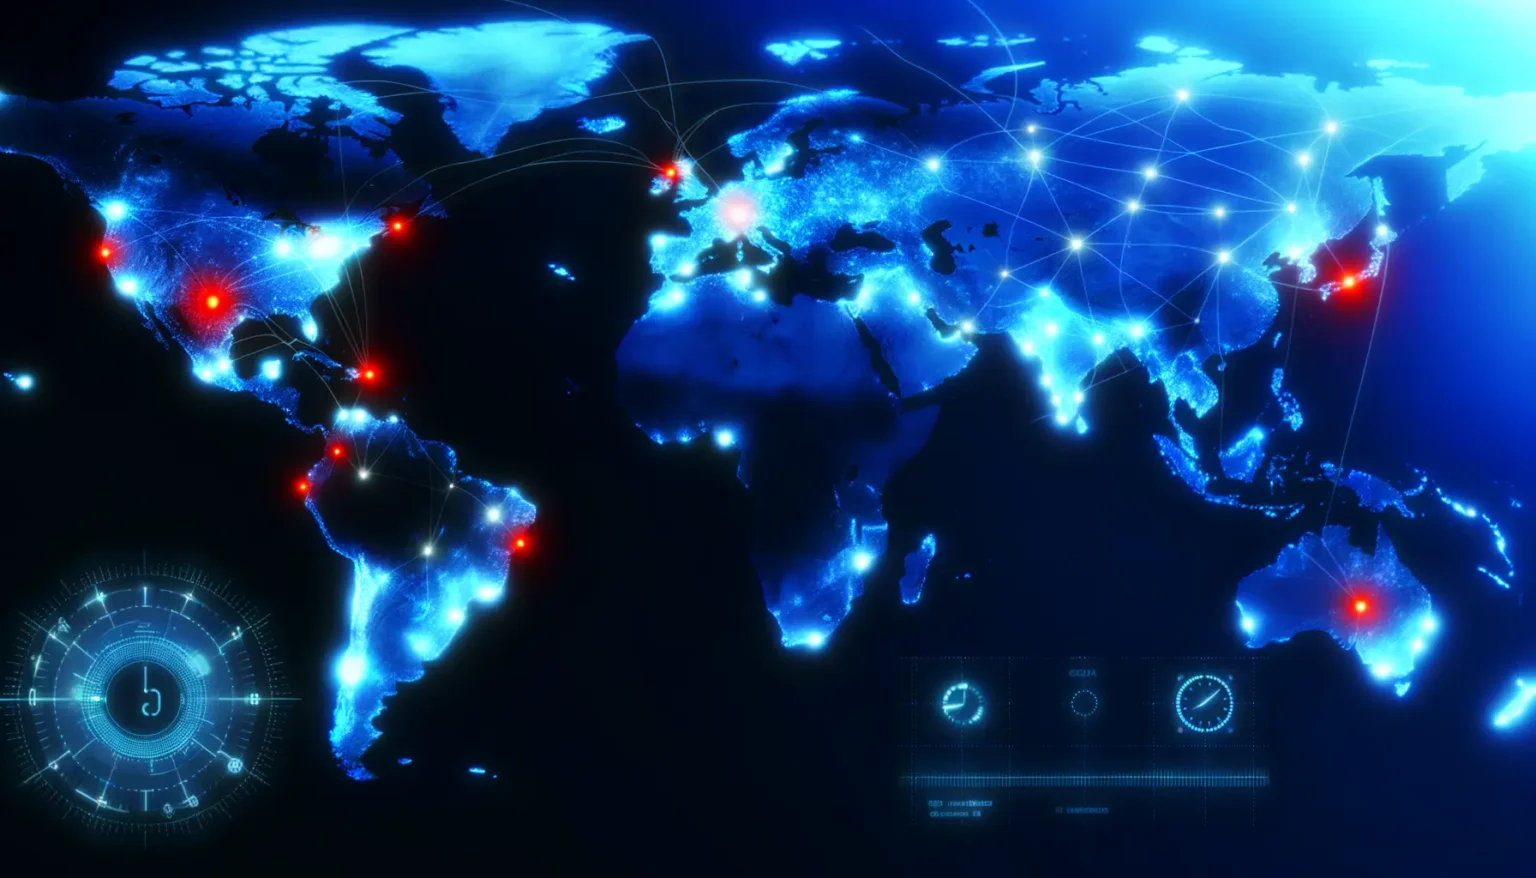 Eine stilisierte Weltkarte in dunkelblauen und neonglühenden Tönen, die globale Netzwerkverbindungen mit leuchtenden Linien und Knotenpunkten zeigt, begleitet von futuristischen digitalen Benutzeroberflächenelementen.